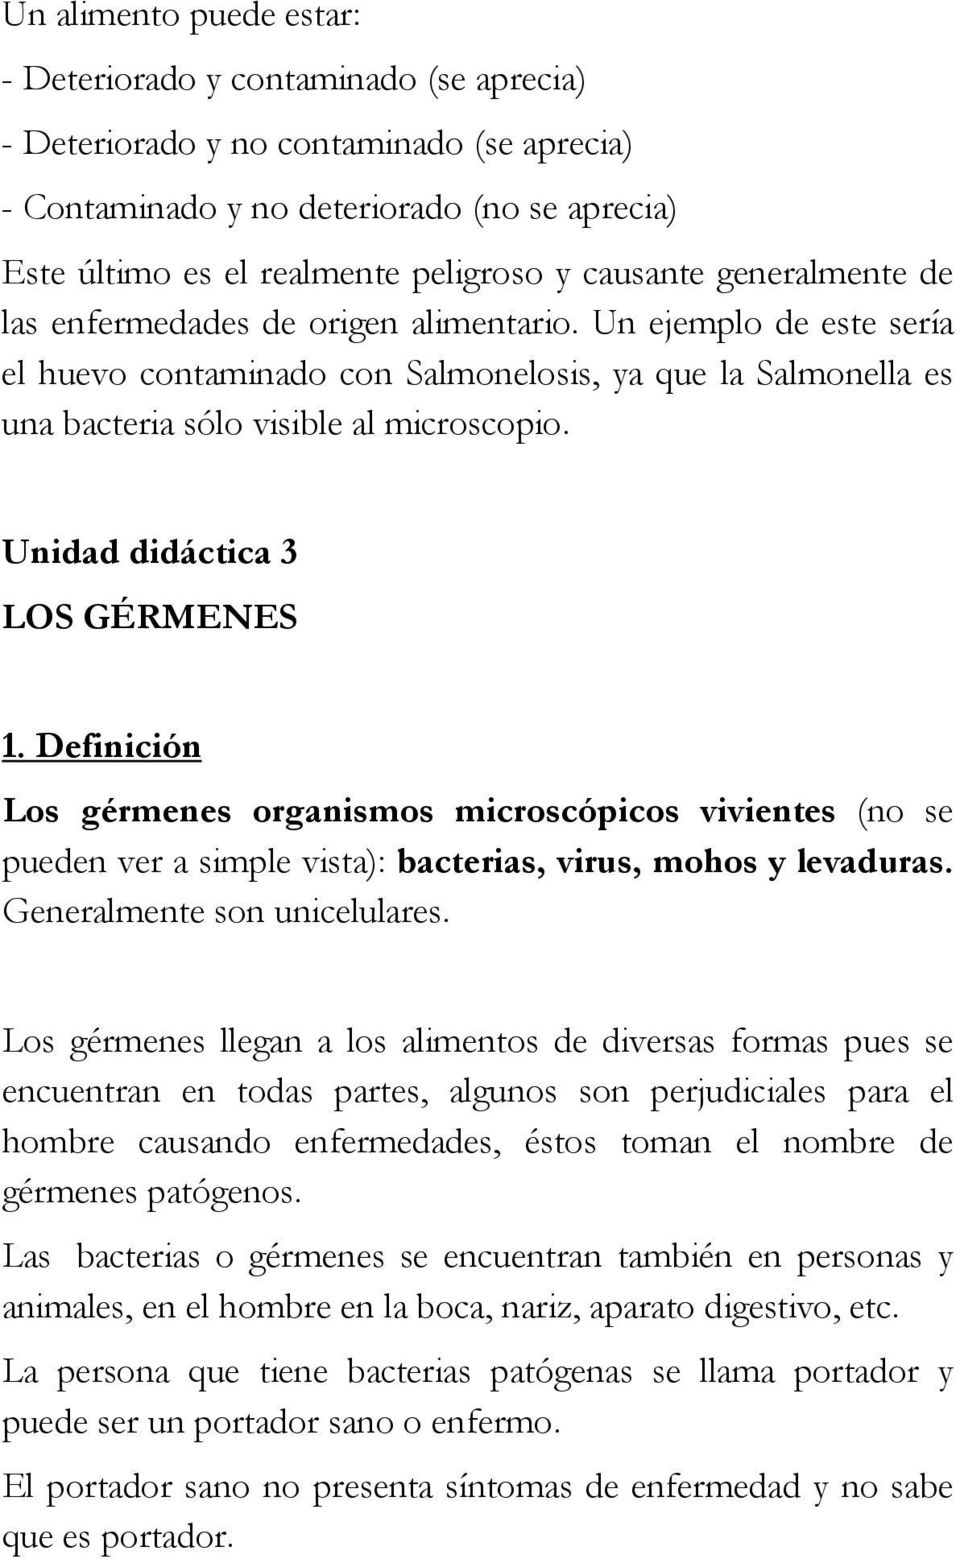 Unidad didáctica 3 LOS GÉRMENES 1. Definición Los gérmenes organismos microscópicos vivientes (no se pueden ver a simple vista): bacterias, virus, mohos y levaduras. Generalmente son unicelulares.